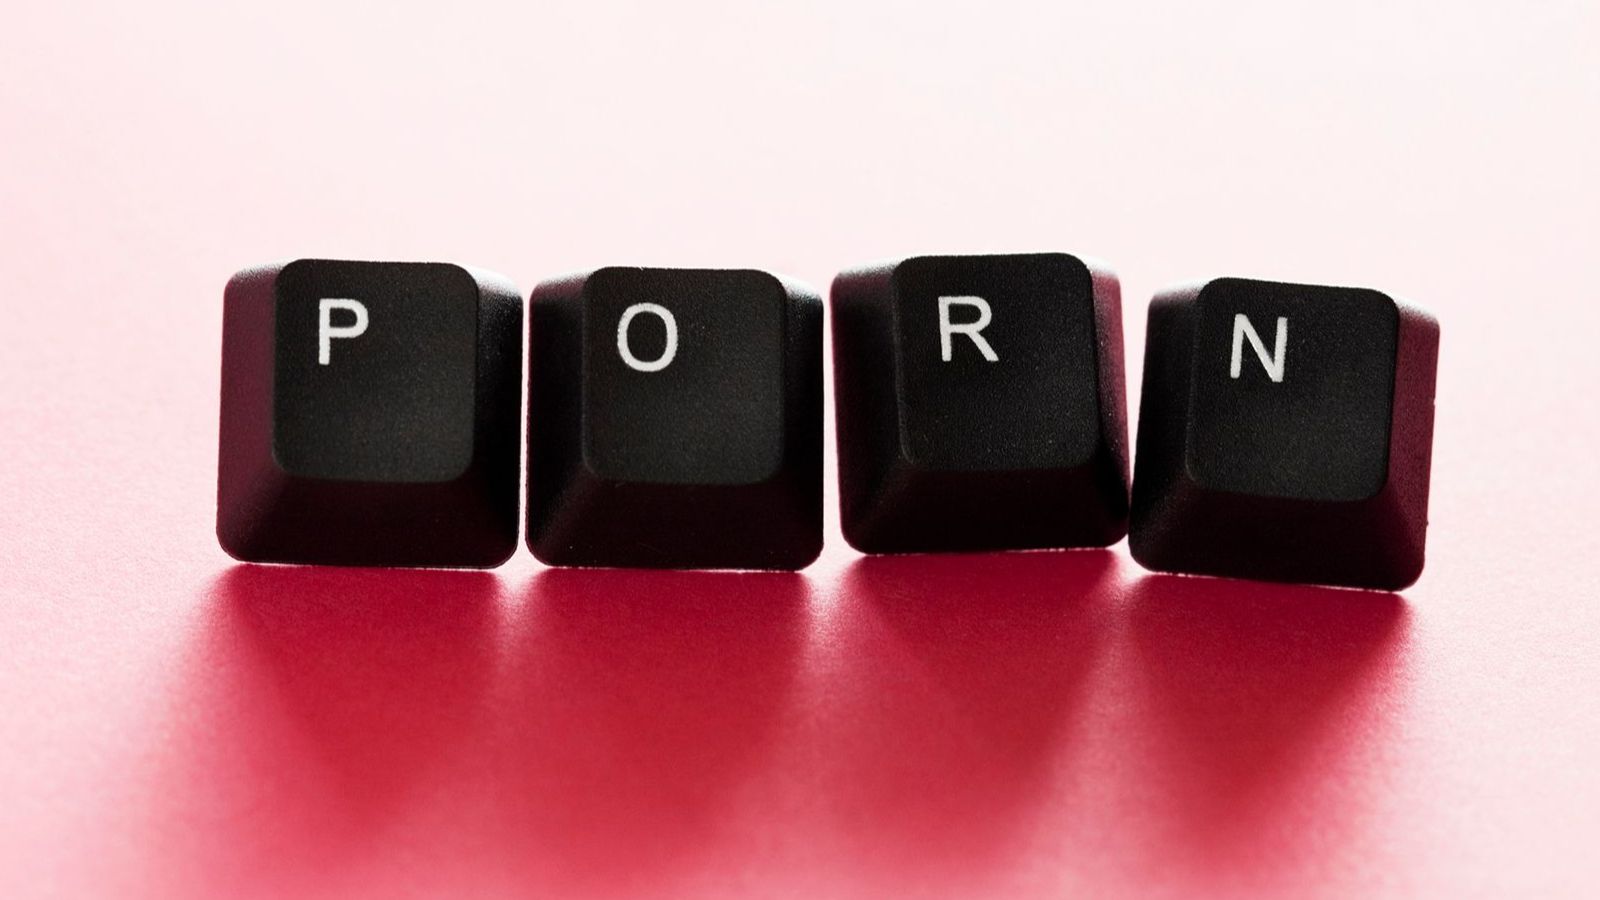 Tasten einer Tastatur, die das Wort "Porn" bilden